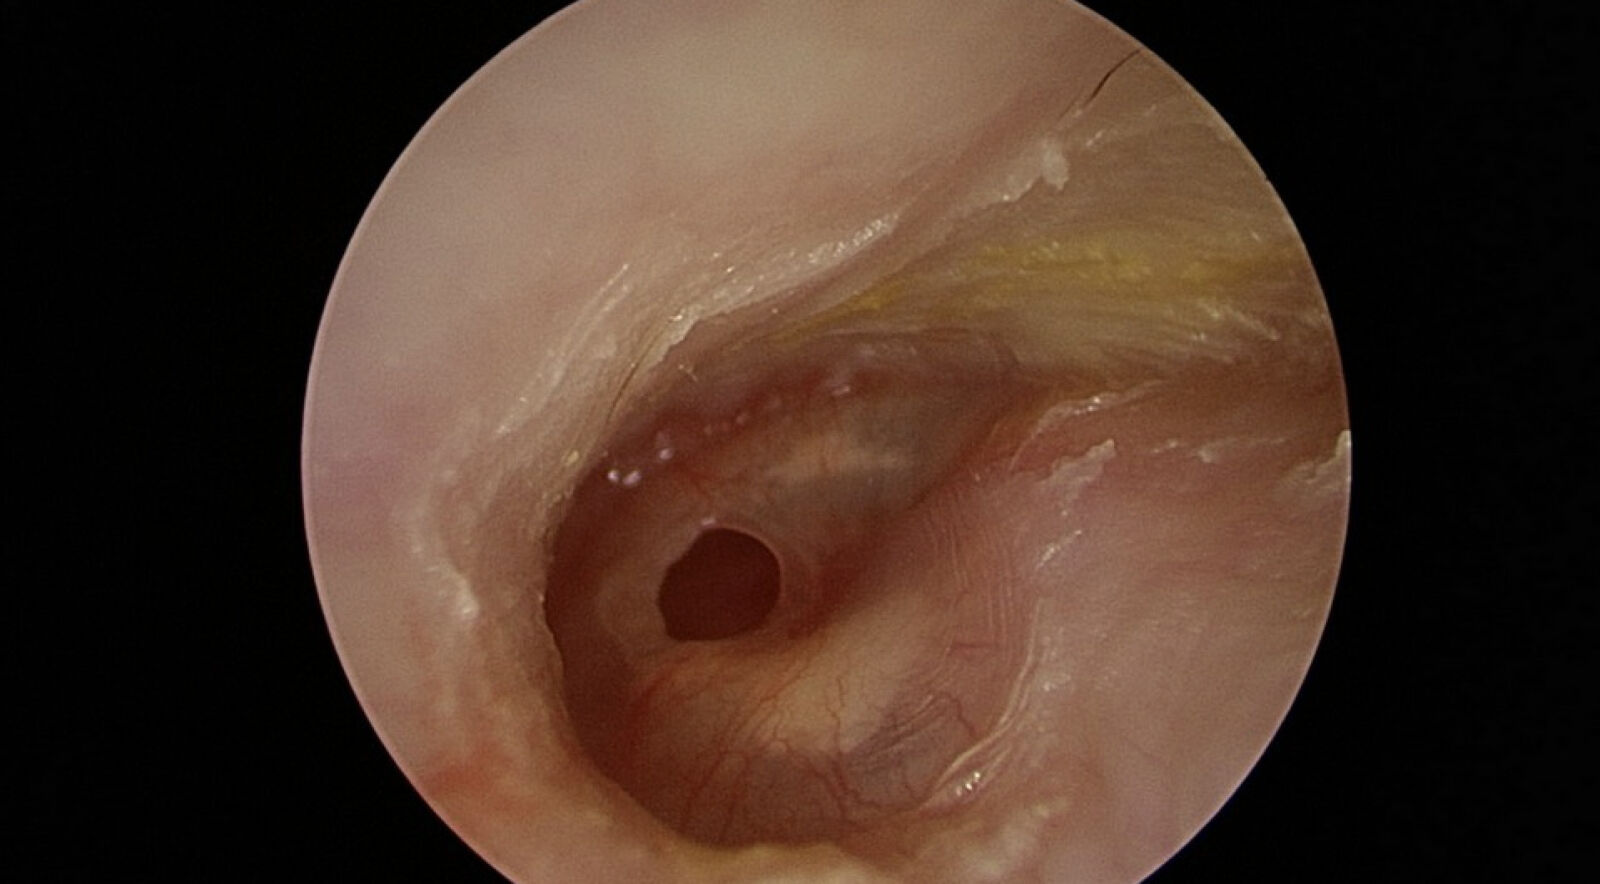 婦人接連感冒竟「聽不清、耳流湯」 醫師一看耳膜破大洞了 15